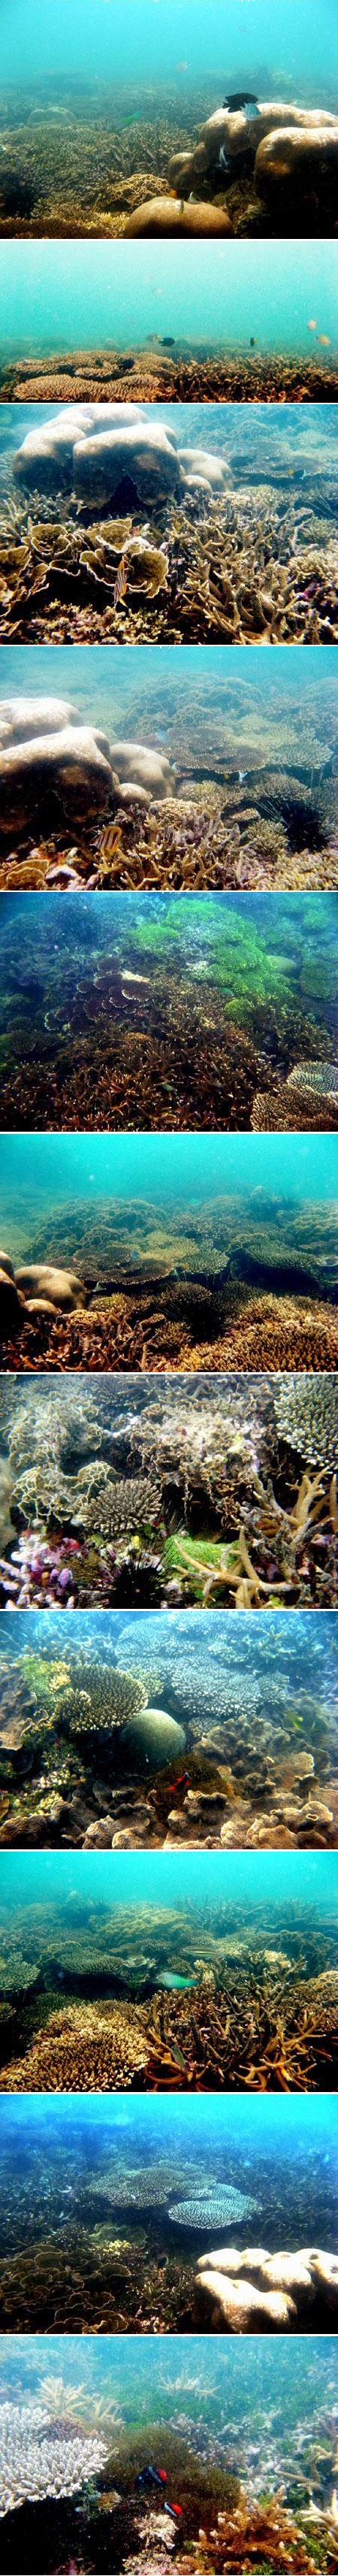 Terumbu karang (coral reef) di Pulau Ketawai, Bangka (Feb 2009)